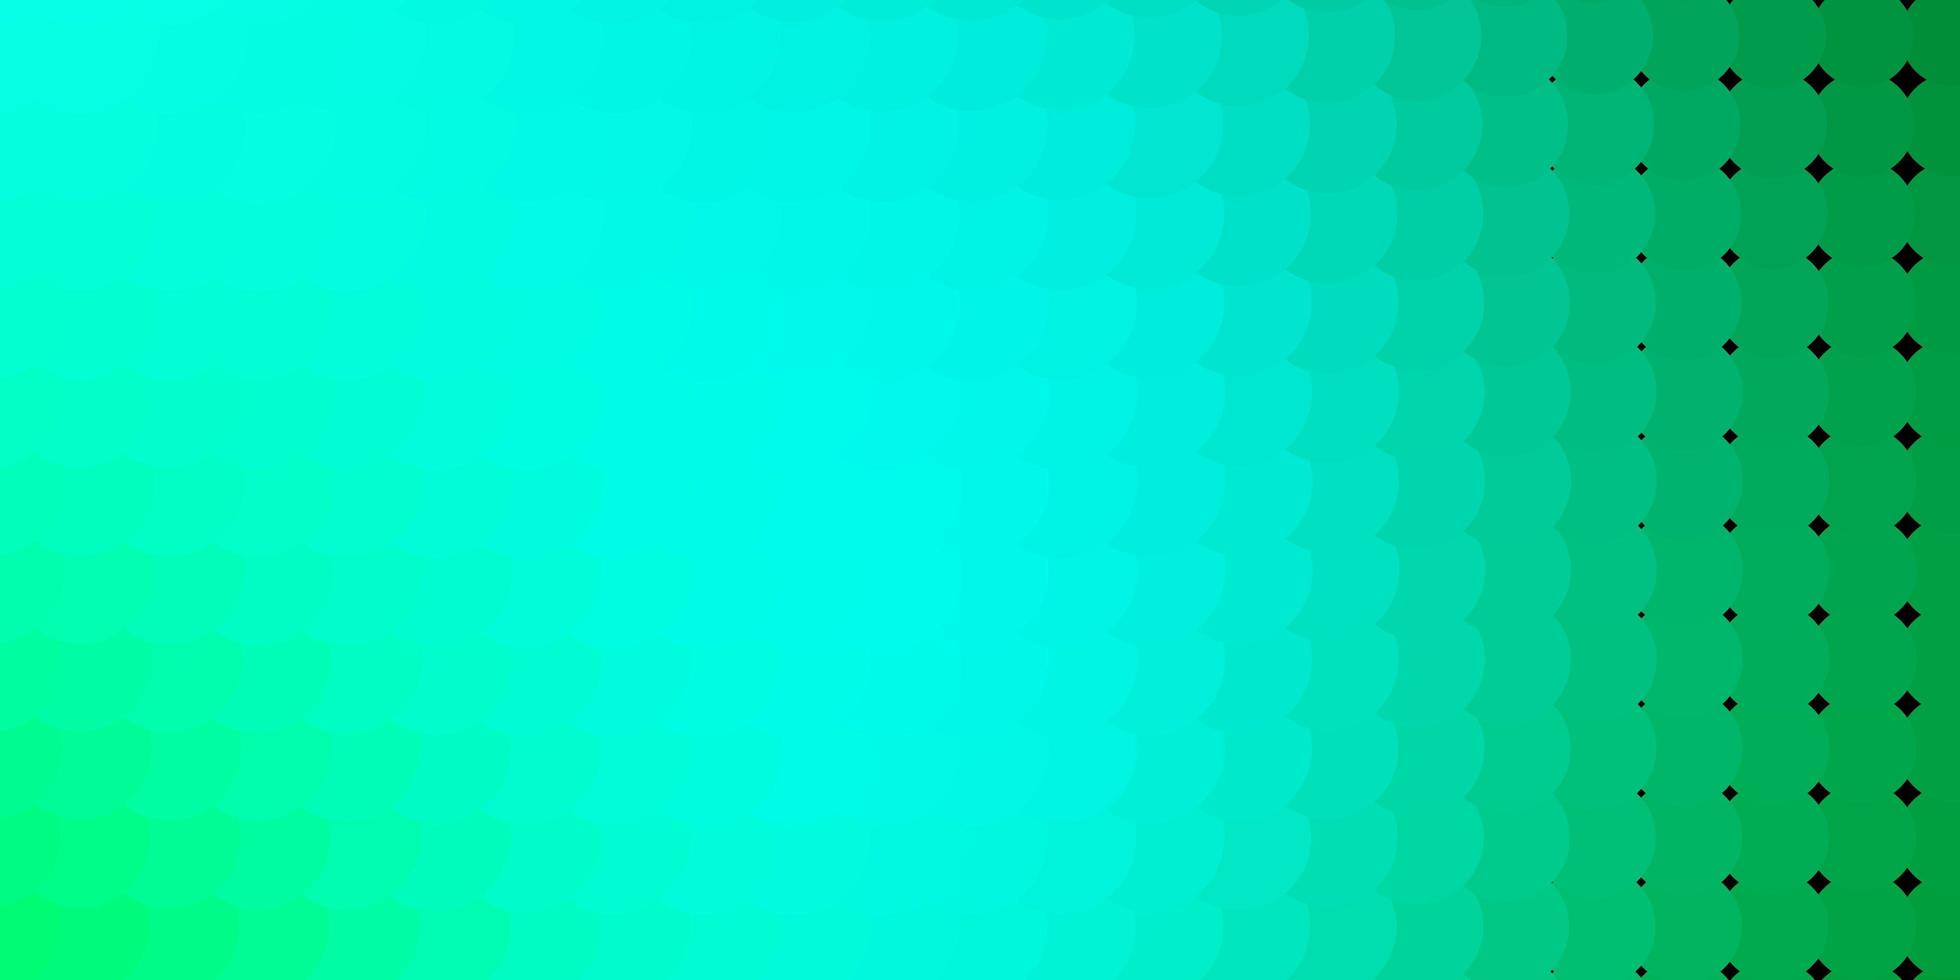 texture de vecteur vert clair avec des cercles.